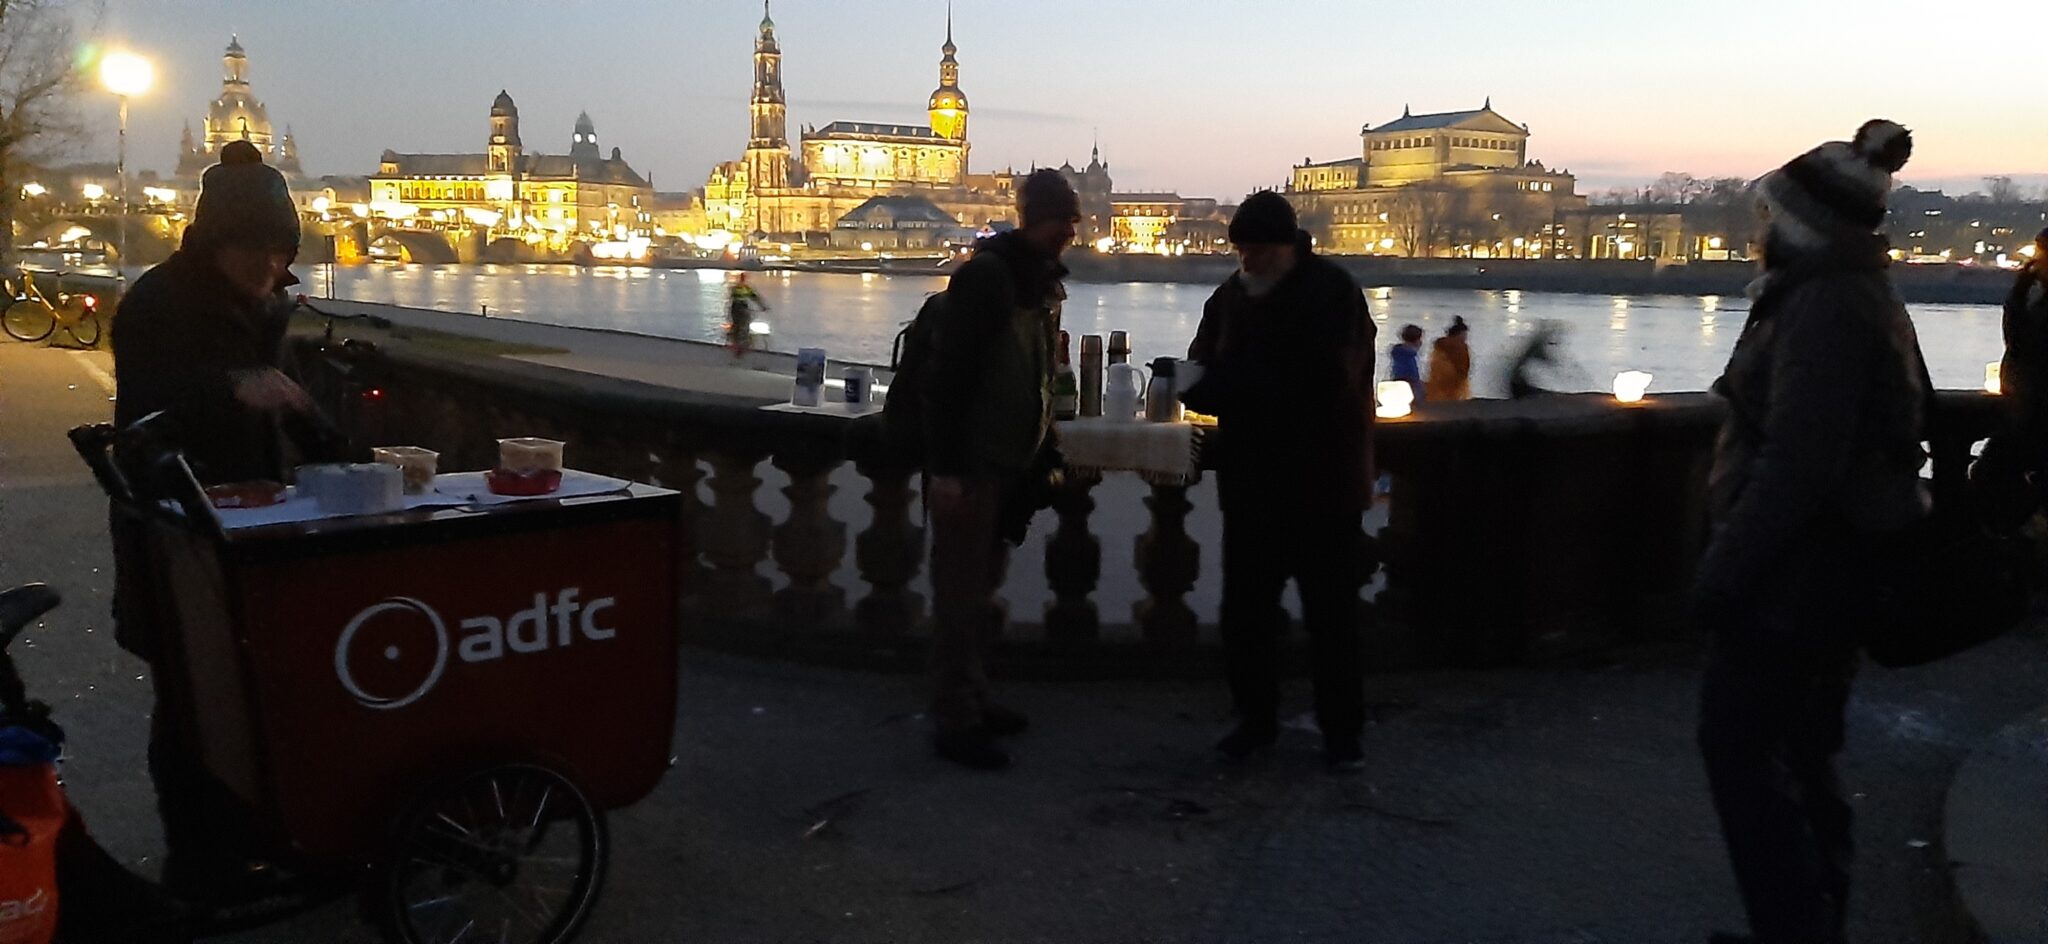 Gute Gespräche trotz frostiger Temperaturen vor der Altstadtkulisse: Der Neujahrsempfang des ADFC Dresden am Glockenspielpavillion